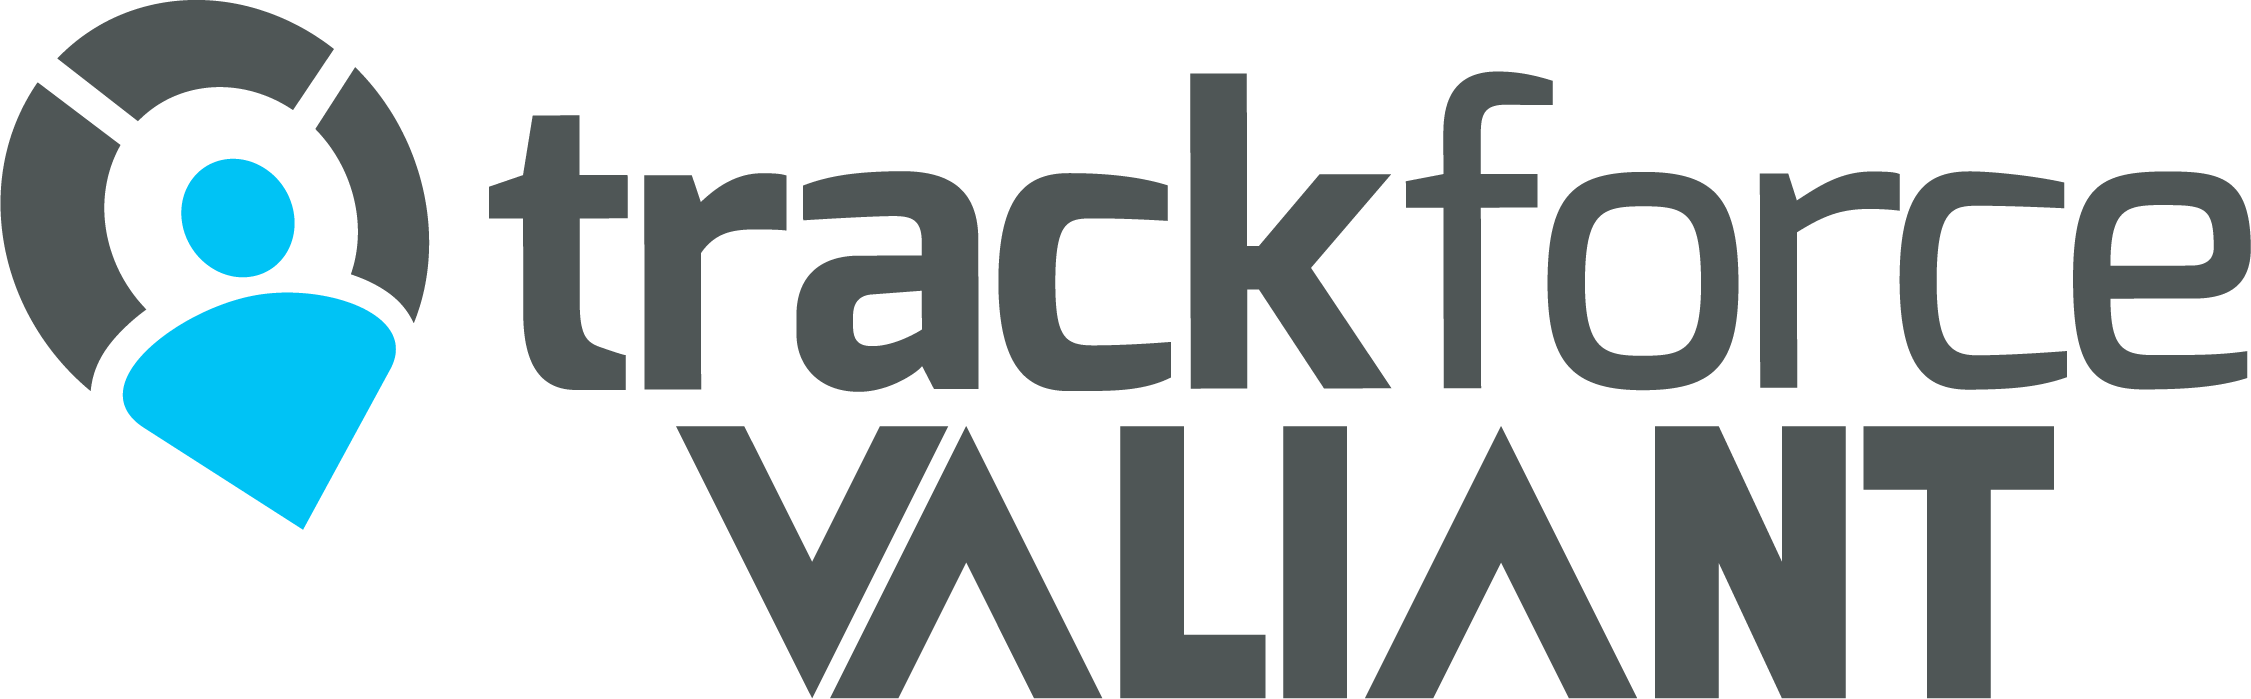 trackforce_valiant-logo